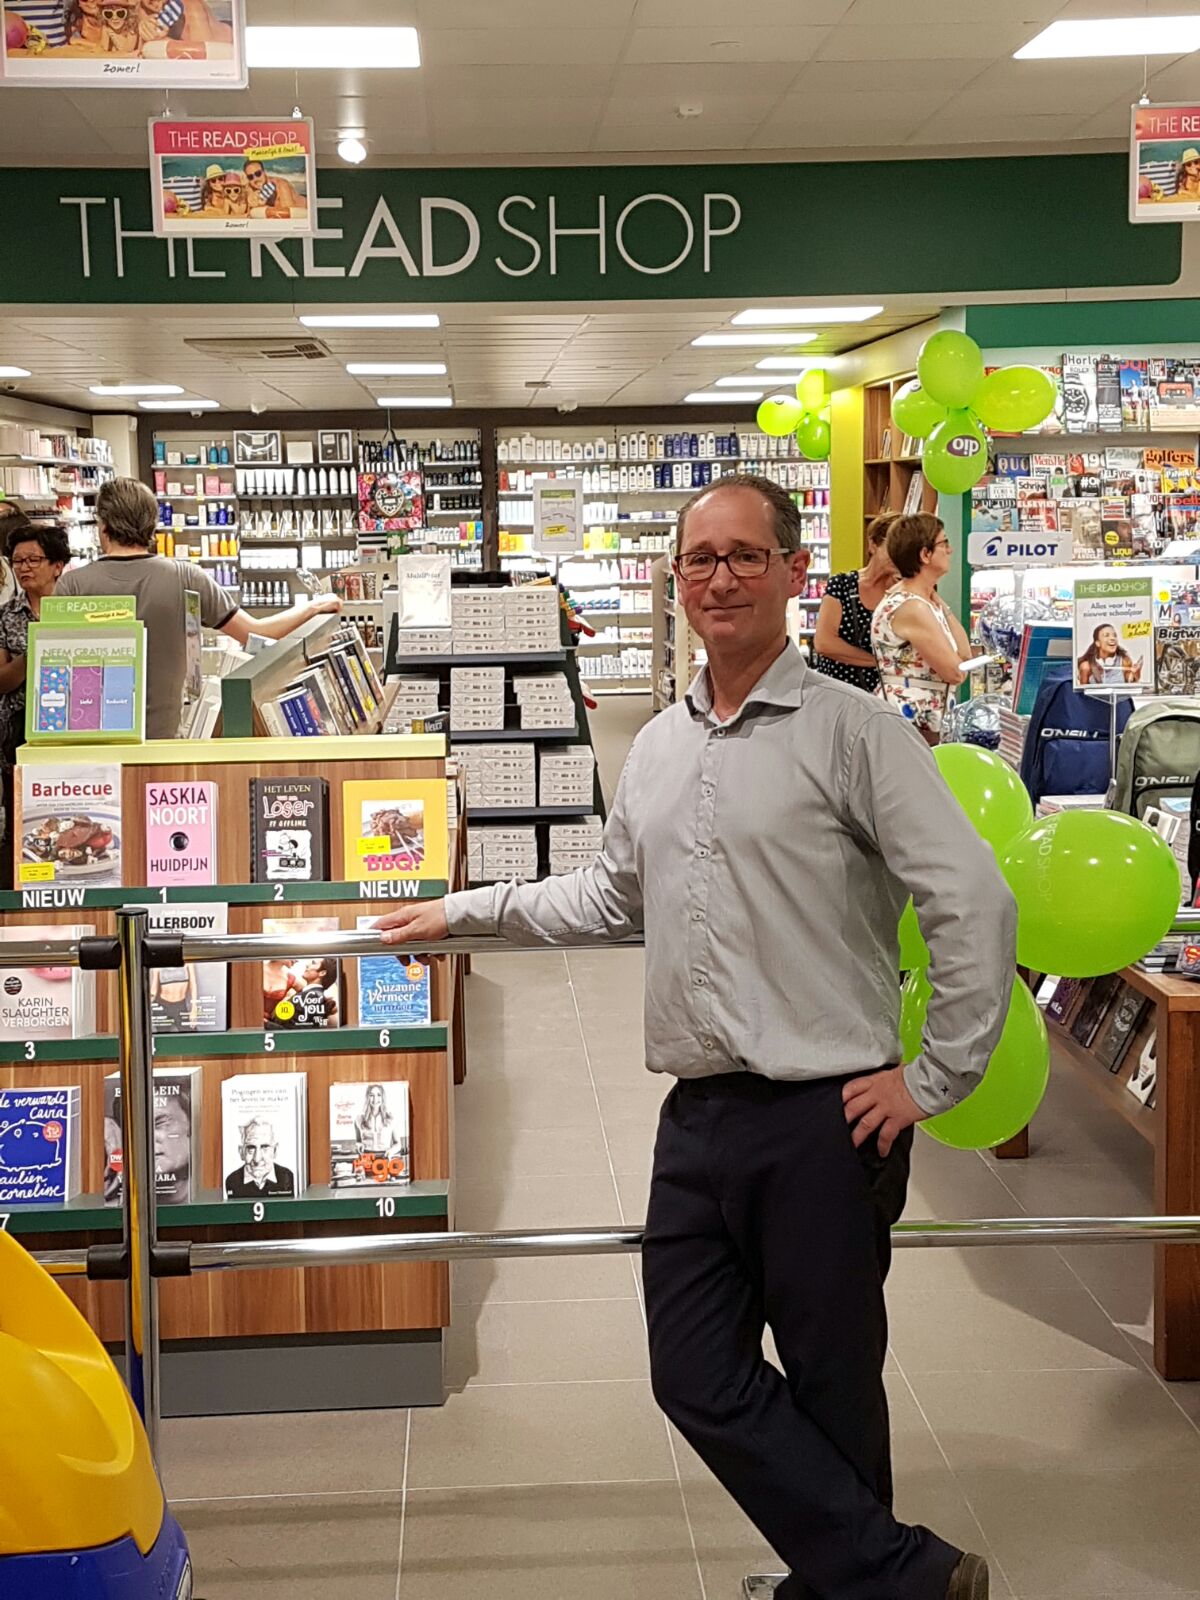 Supermarkt-eigenaar Wim Eijkemans heeft een D.I.O. drogisterij en een The Read Shop vestiging aan de winkel toegevoegd om de dienstverlening aan de klant verder te vergroten. Bron: FranchiseFormules.NL